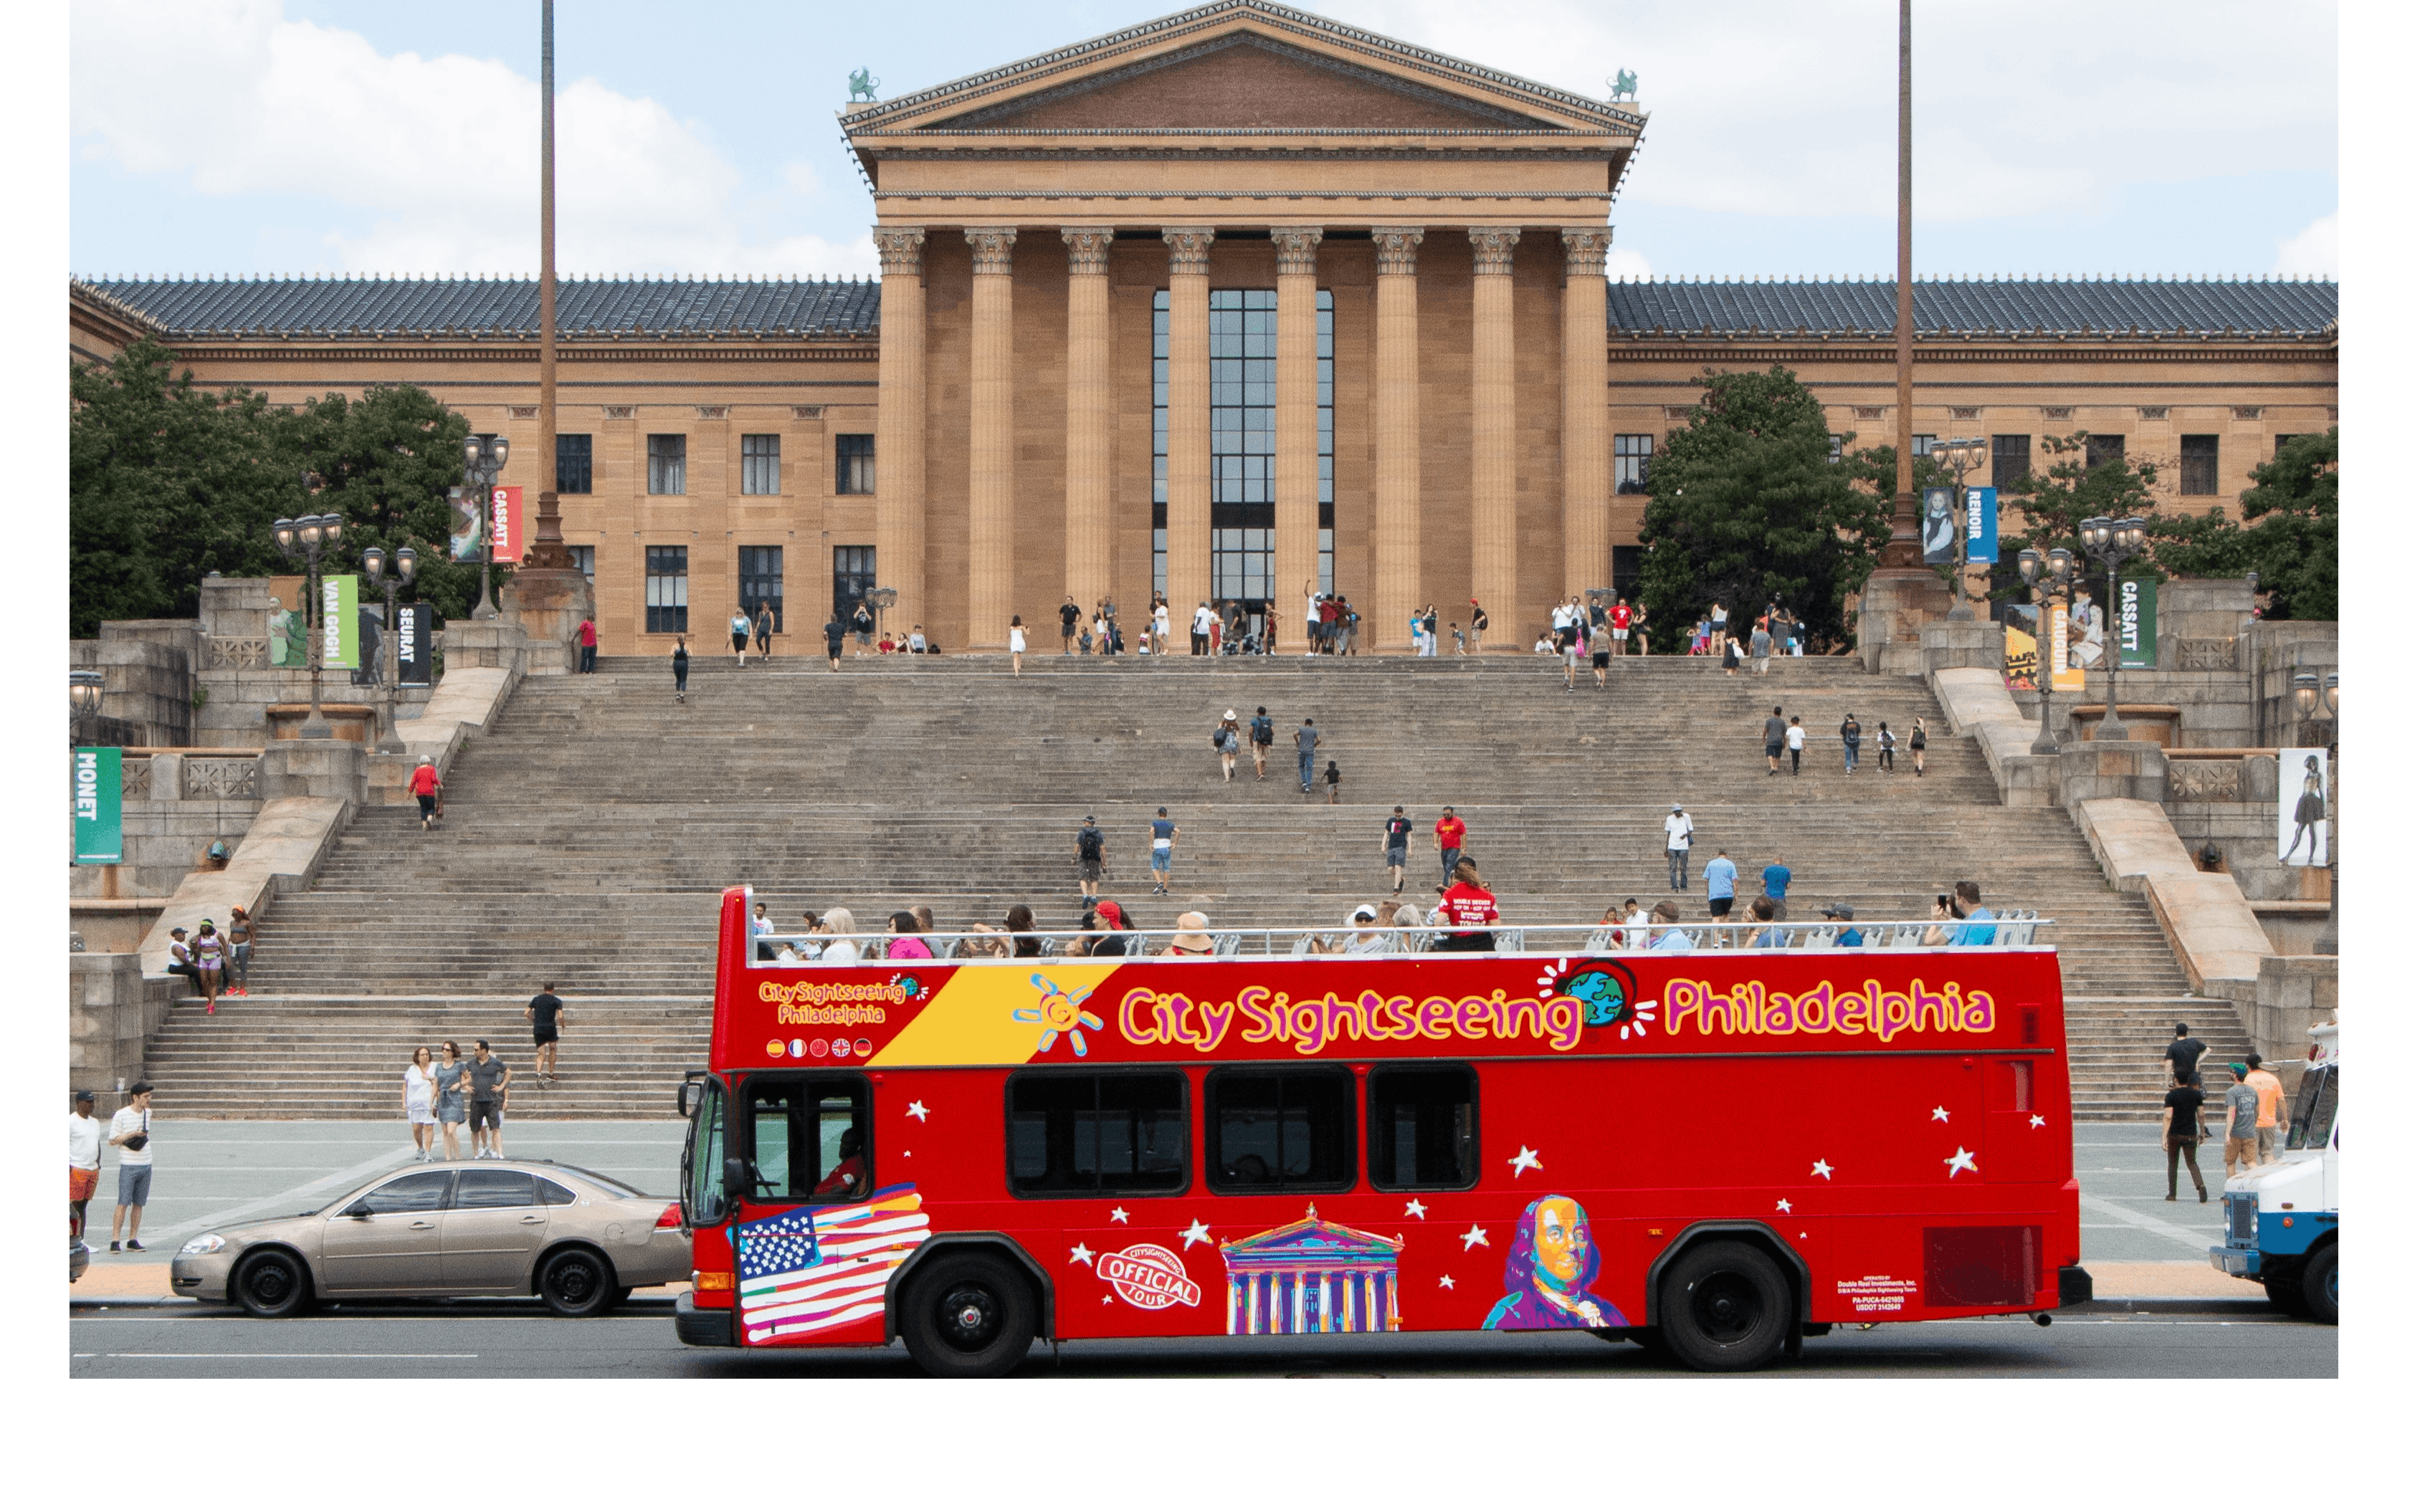 Wycieczka autobusowa typu hop-on hop-off po Filadelfii w ramach City Sightseeing